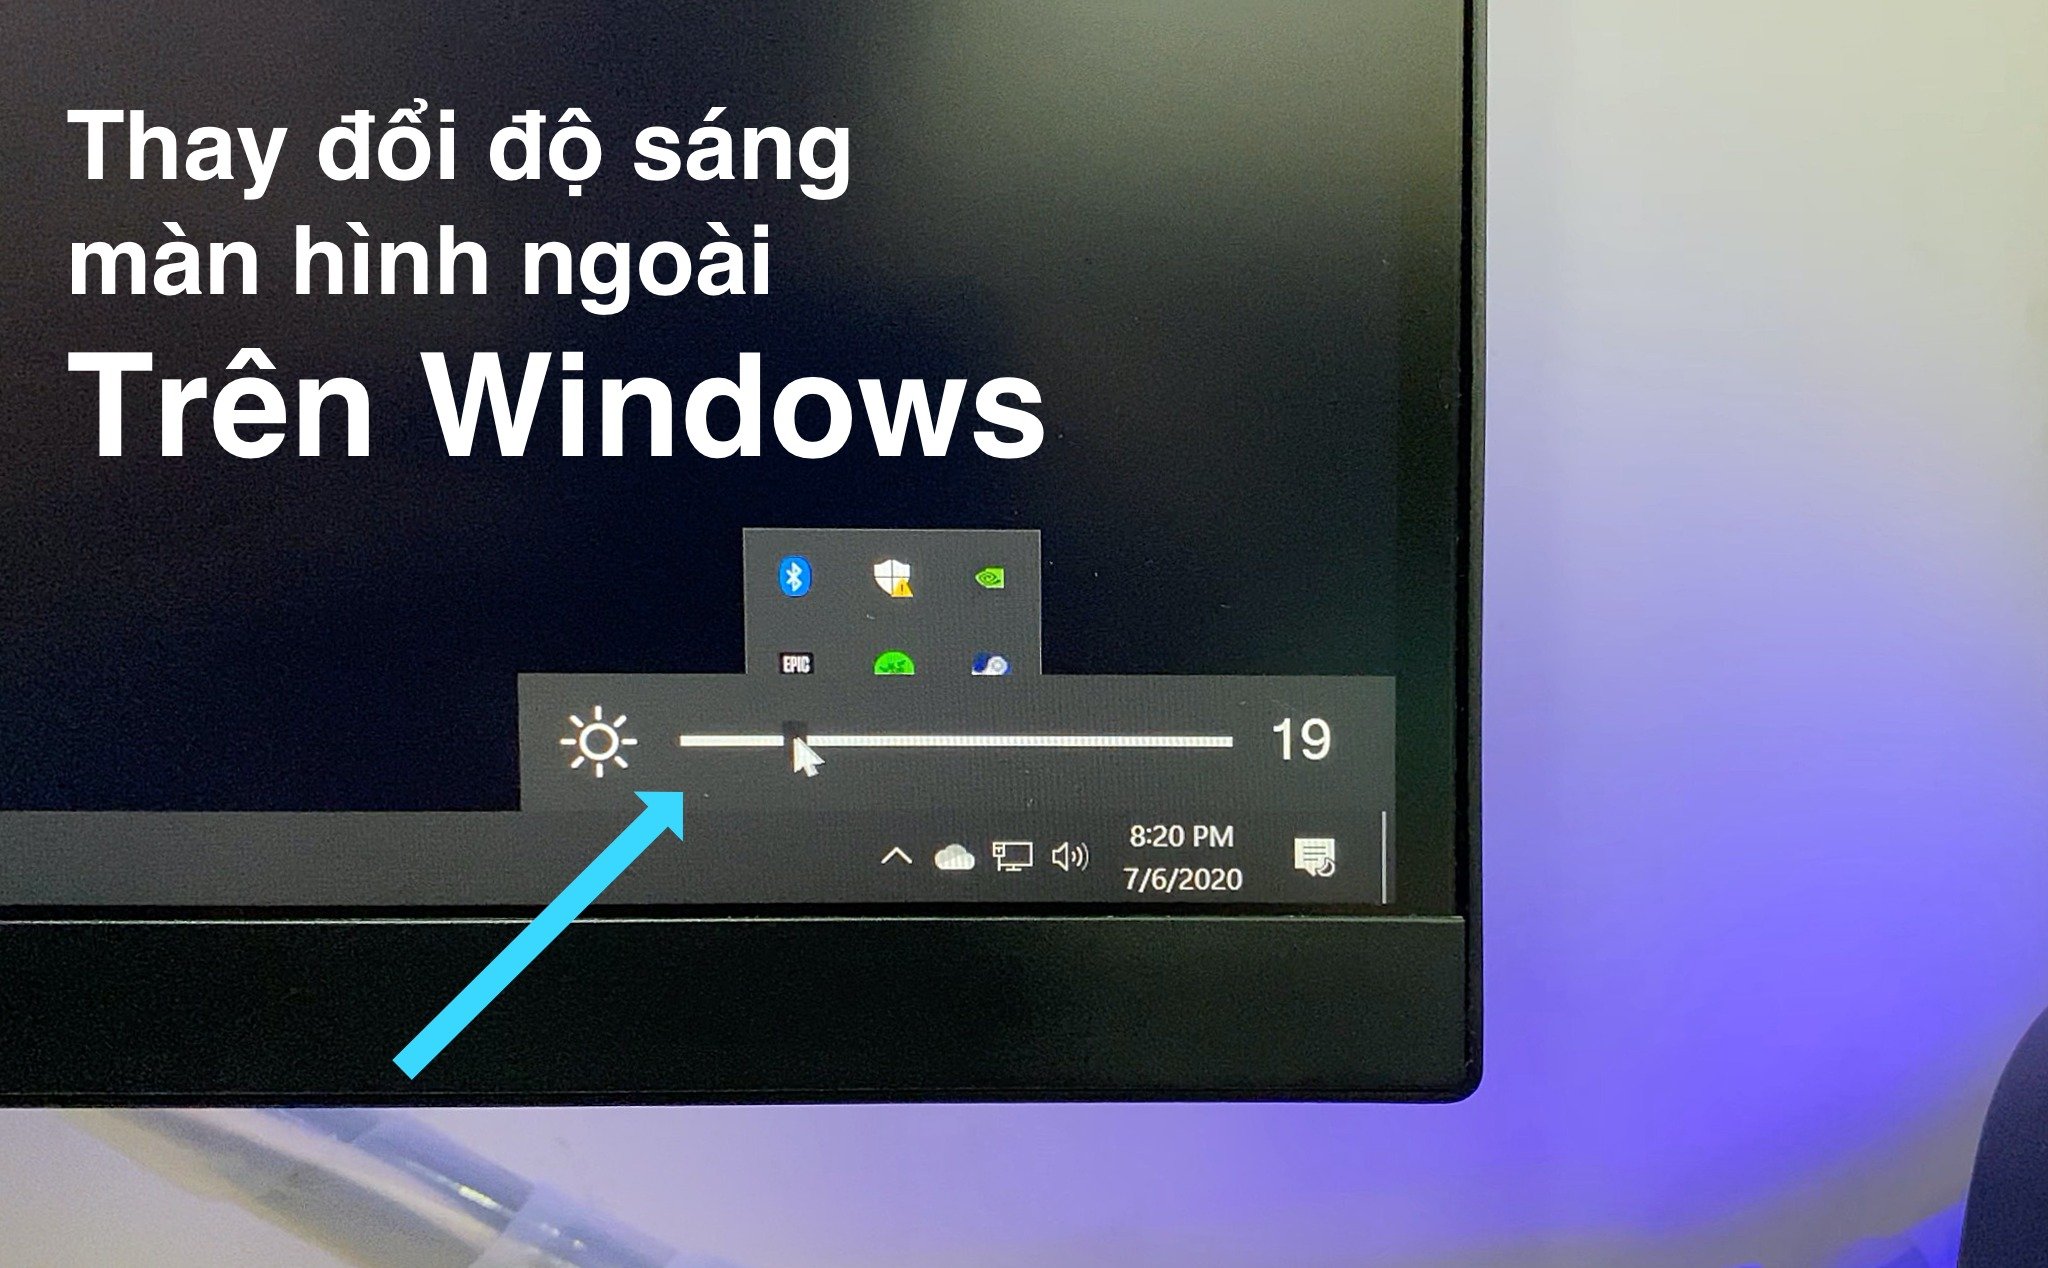 Windows: Chỉnh độ sáng màn hình ngoài bằng phần mềm trên máy thay vì bấm nút trên màn hình